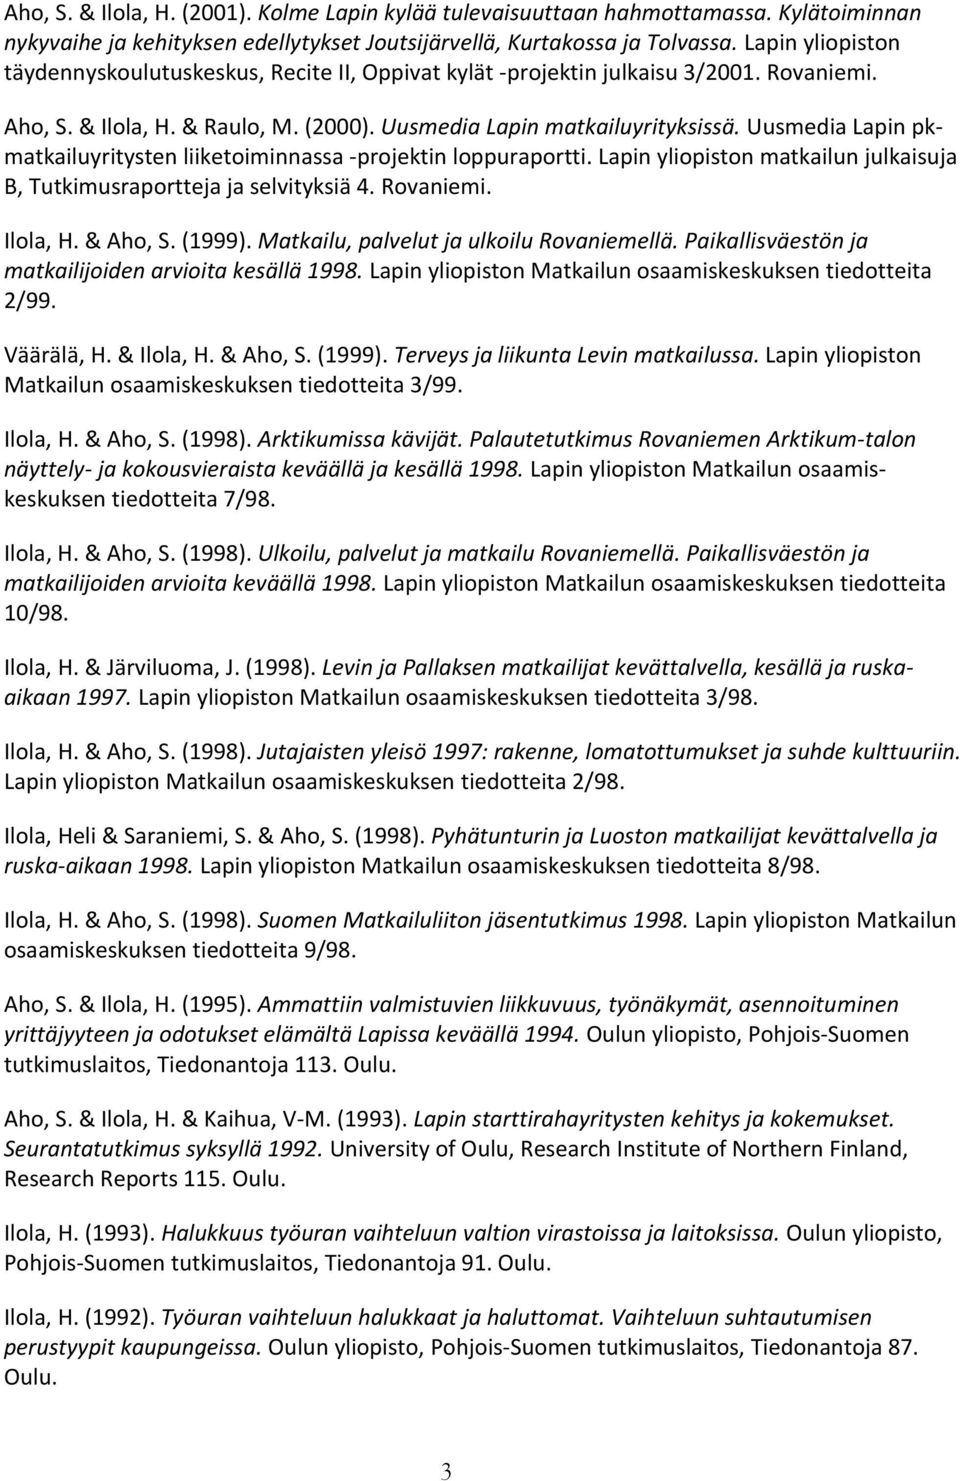 Uusmedia Lapin pkmatkailuyritysten liiketoiminnassa -projektin loppuraportti. Lapin yliopiston matkailun julkaisuja B, Tutkimusraportteja ja selvityksiä 4. Rovaniemi. Ilola, H. & Aho, S. (1999).